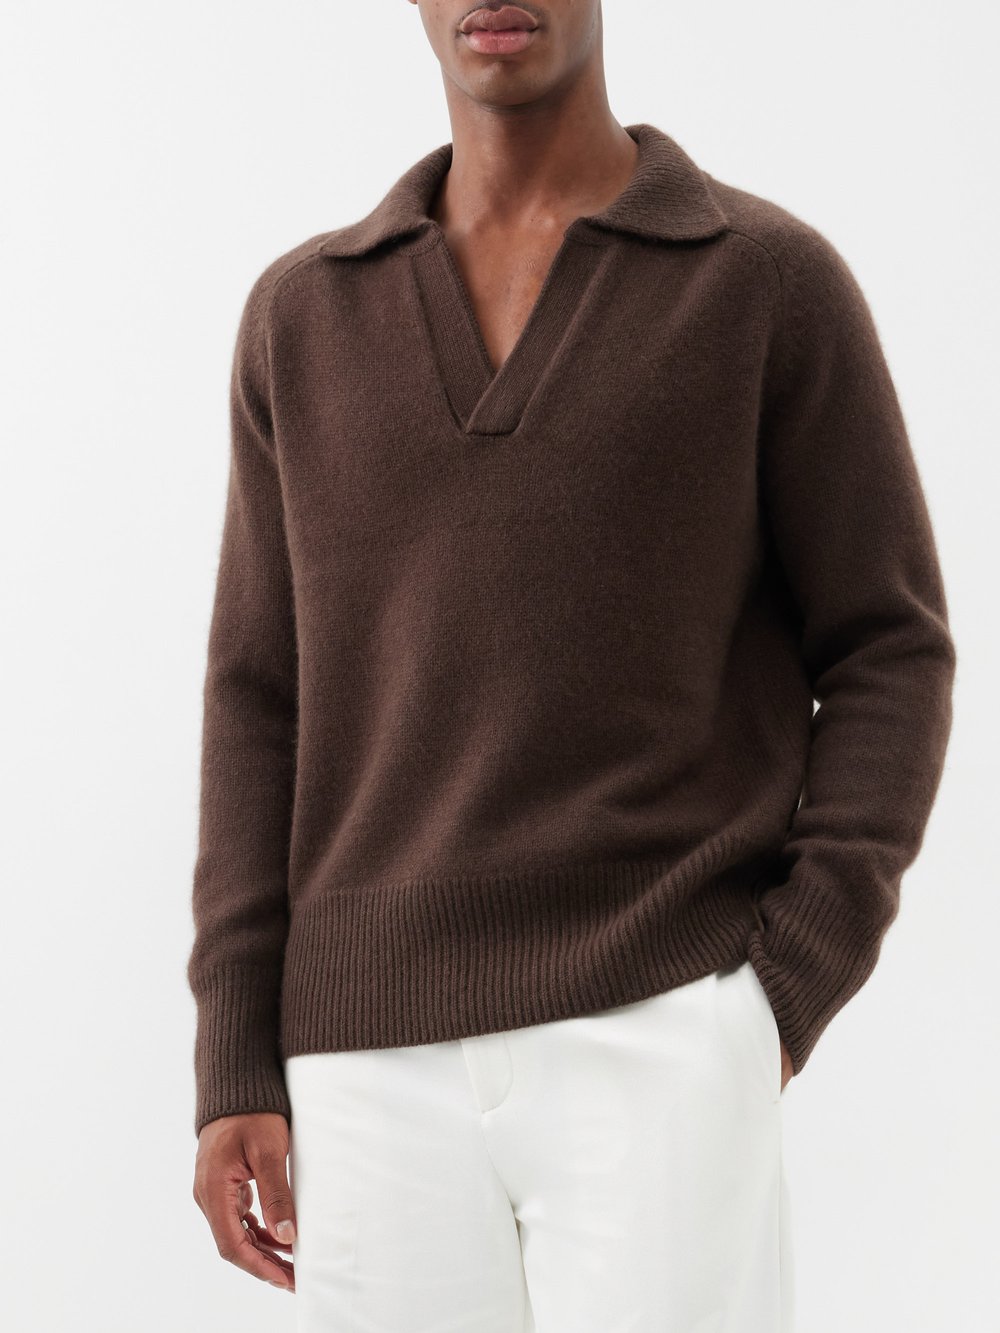 Кашемировый свитер mr clifton gate с v-образным вырезом Arch4, серый